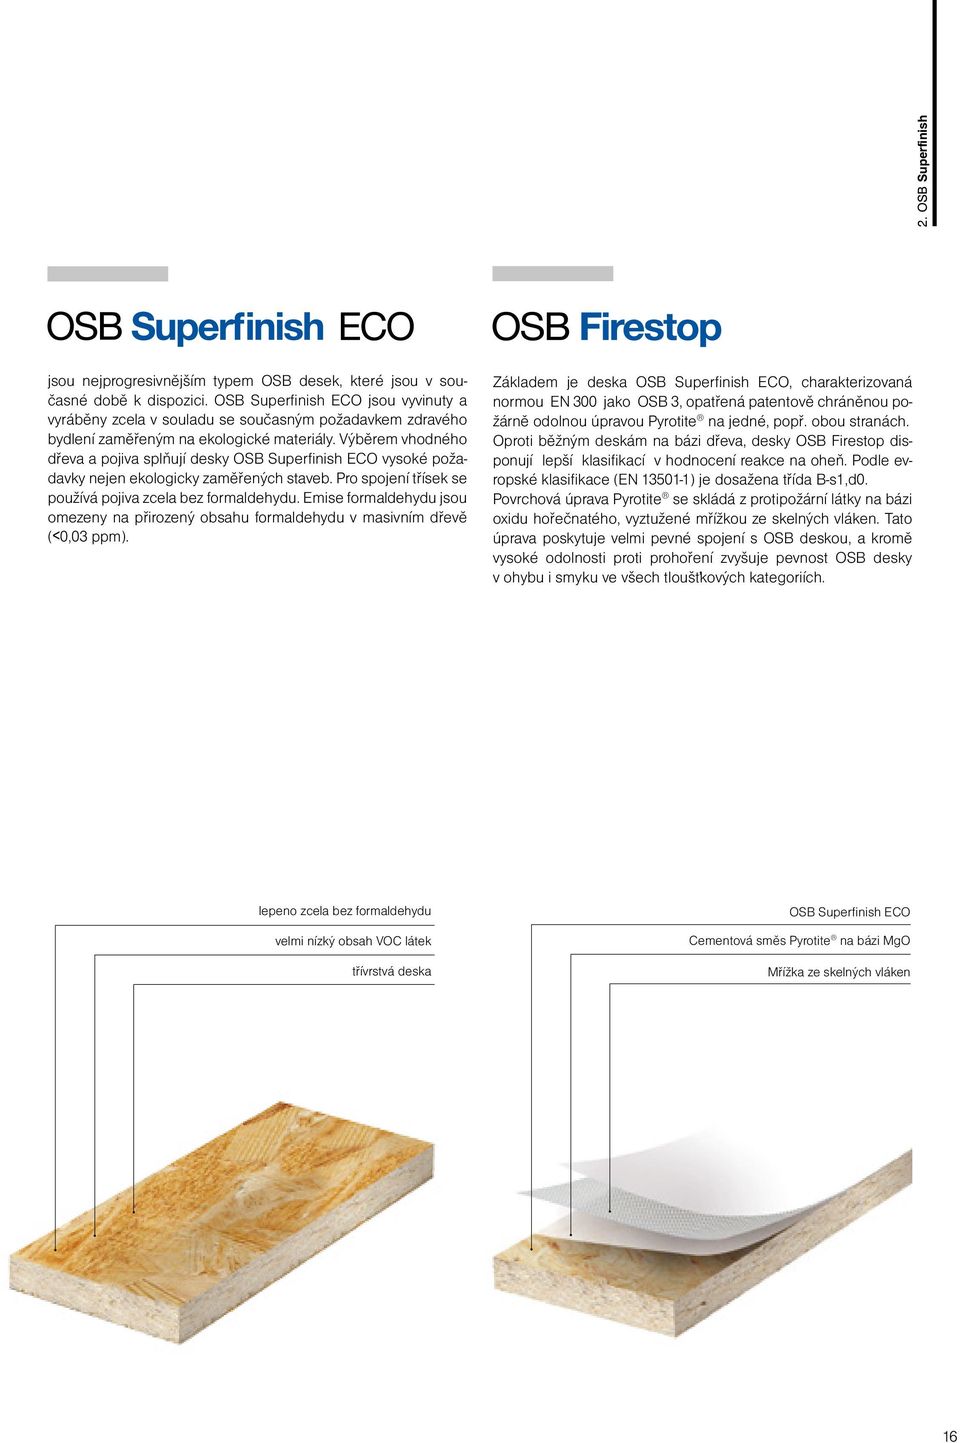 Výběrem vhodného dřeva a pojiva splňují desky OSB Superfinish ECO vysoké požadavky nejen ekologicky zaměřených staveb. Pro spojení třísek se používá pojiva zcela bez formaldehydu.